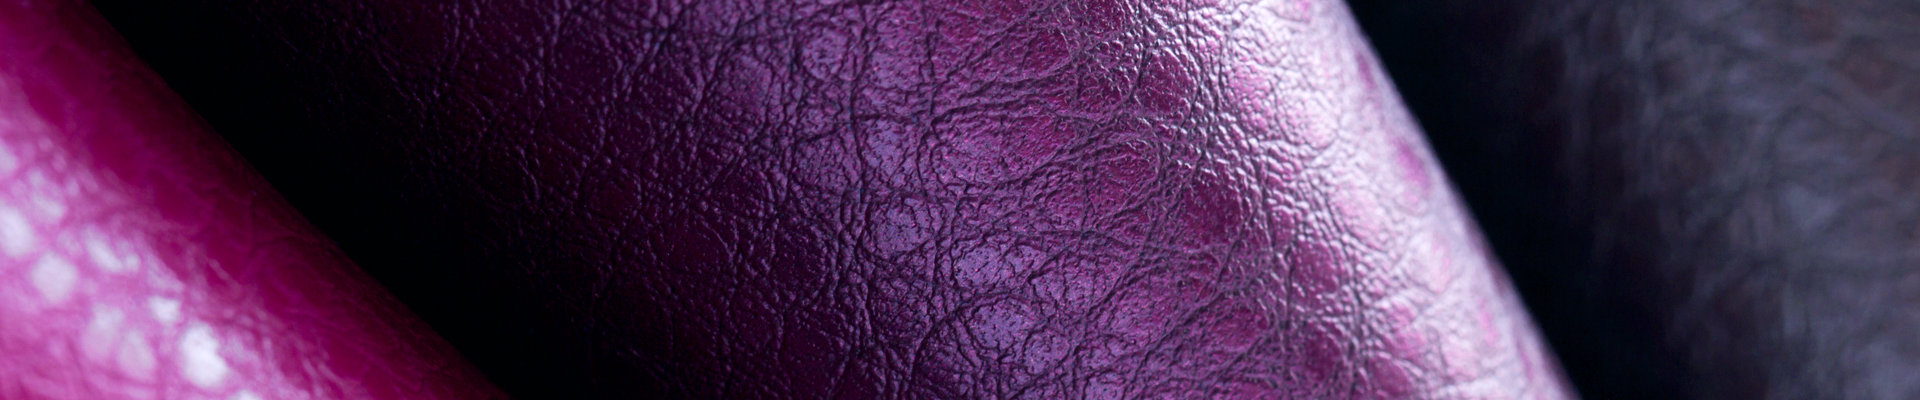 紫色皮革的特写